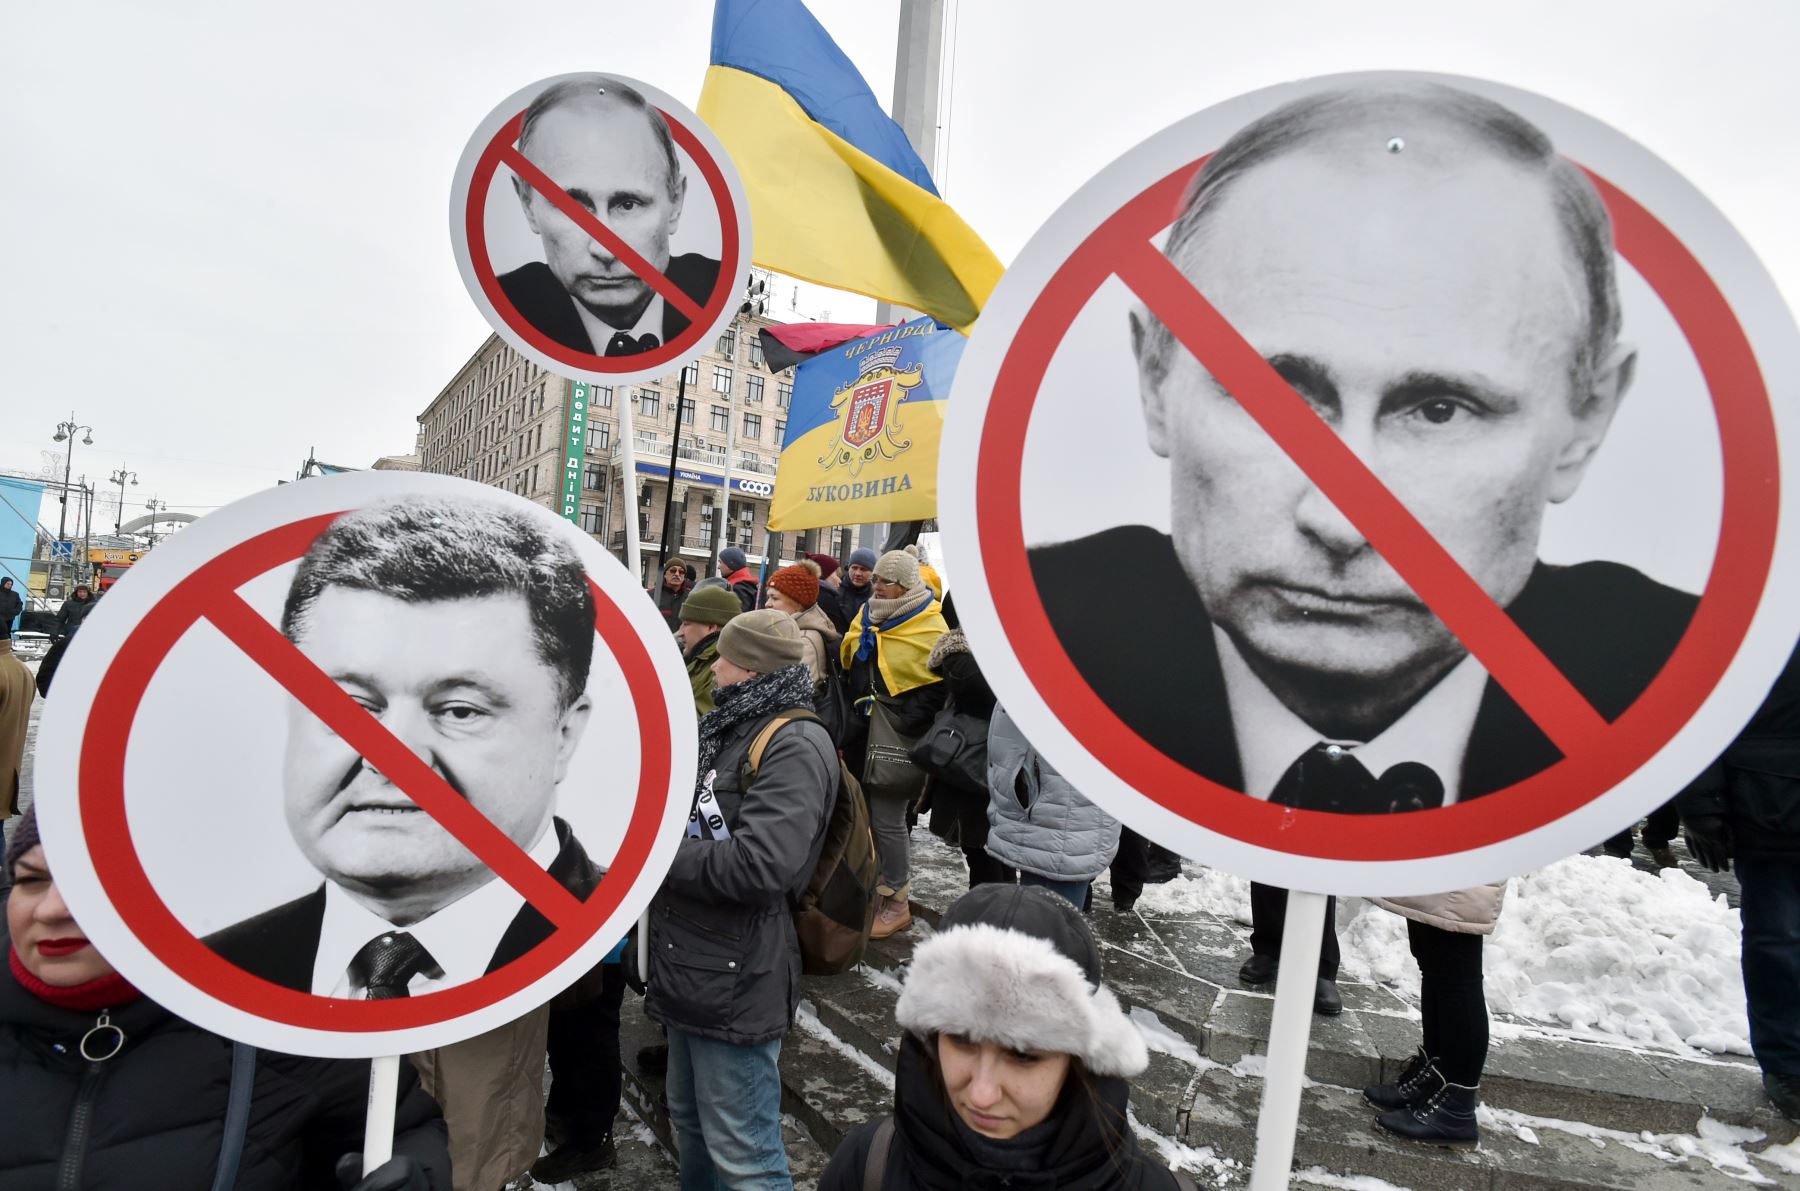 Los activistas sostienen pancartas que representan al presidente ucraniano Poroshenko y al presidente ruso Vladimir Putin durante una manifestación pidiendo el derrocamiento del presidente ucraniano.Foto:AFP